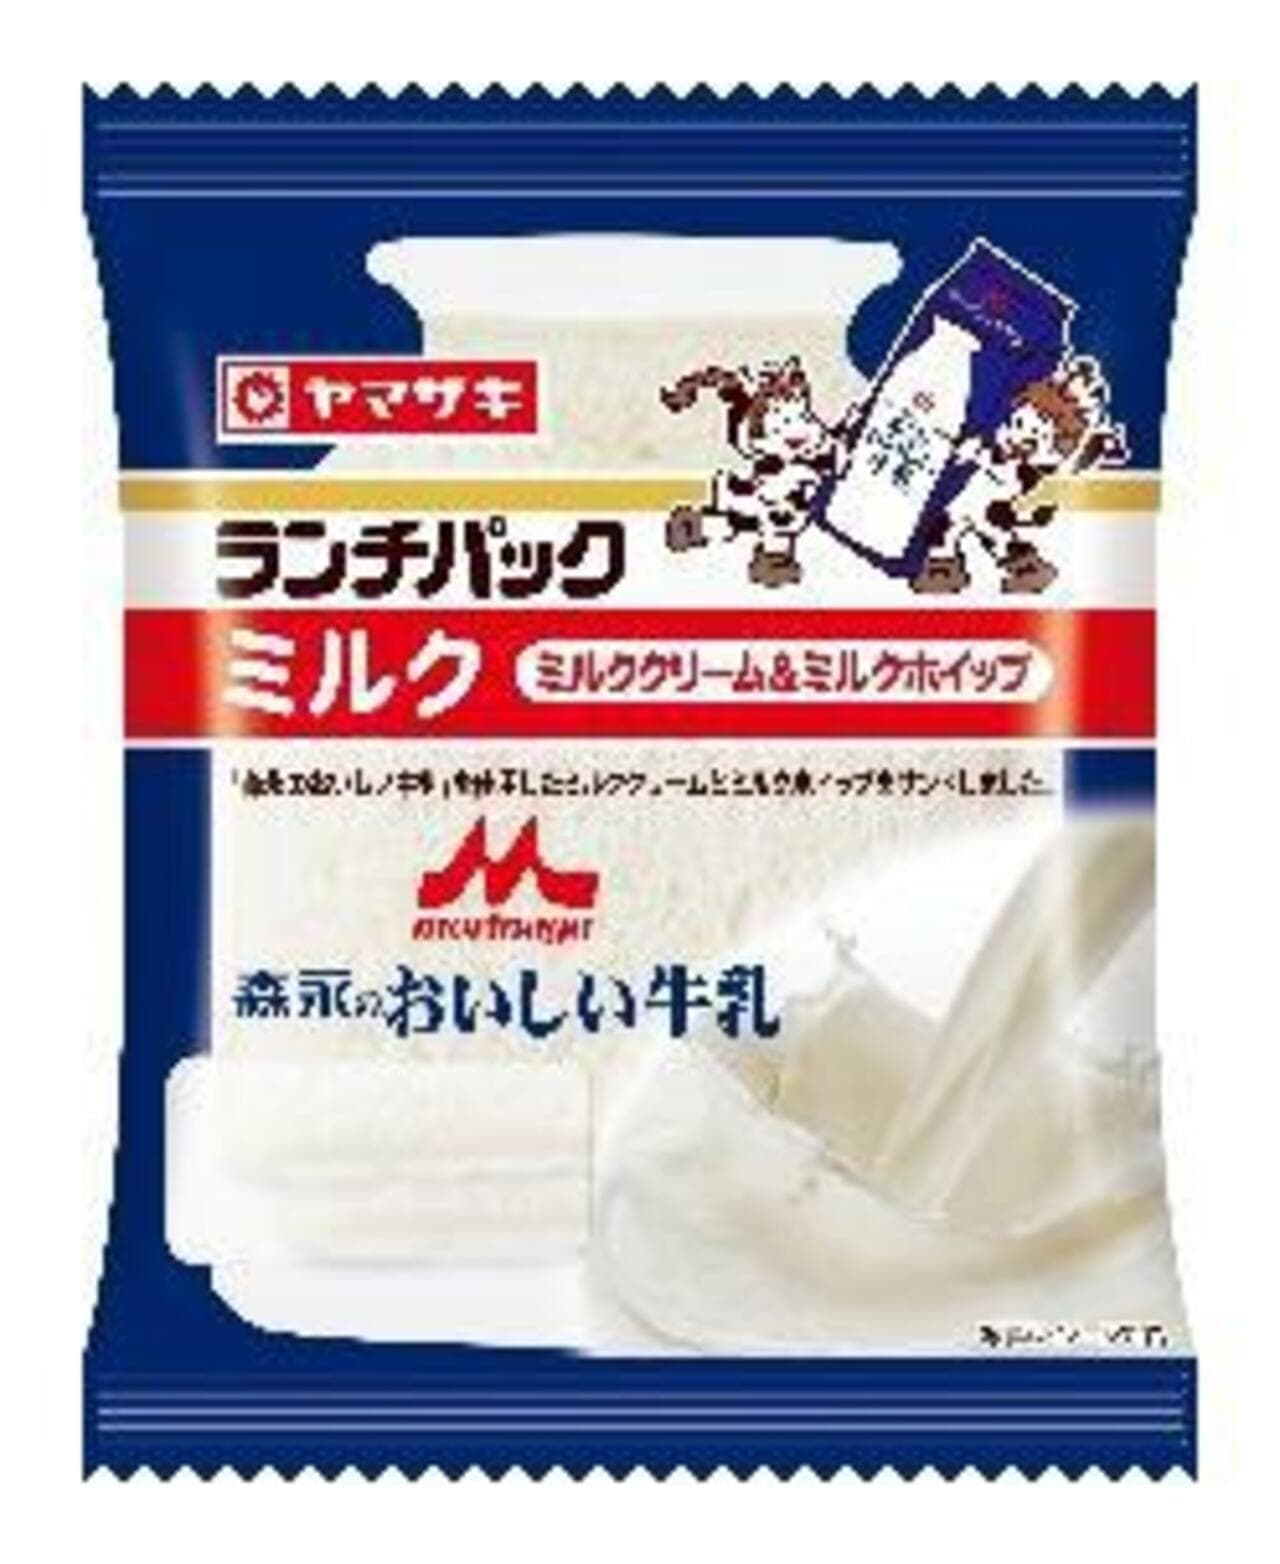 Morinaga Milk Industry and Yamazaki "Lunch Pack (Milk)